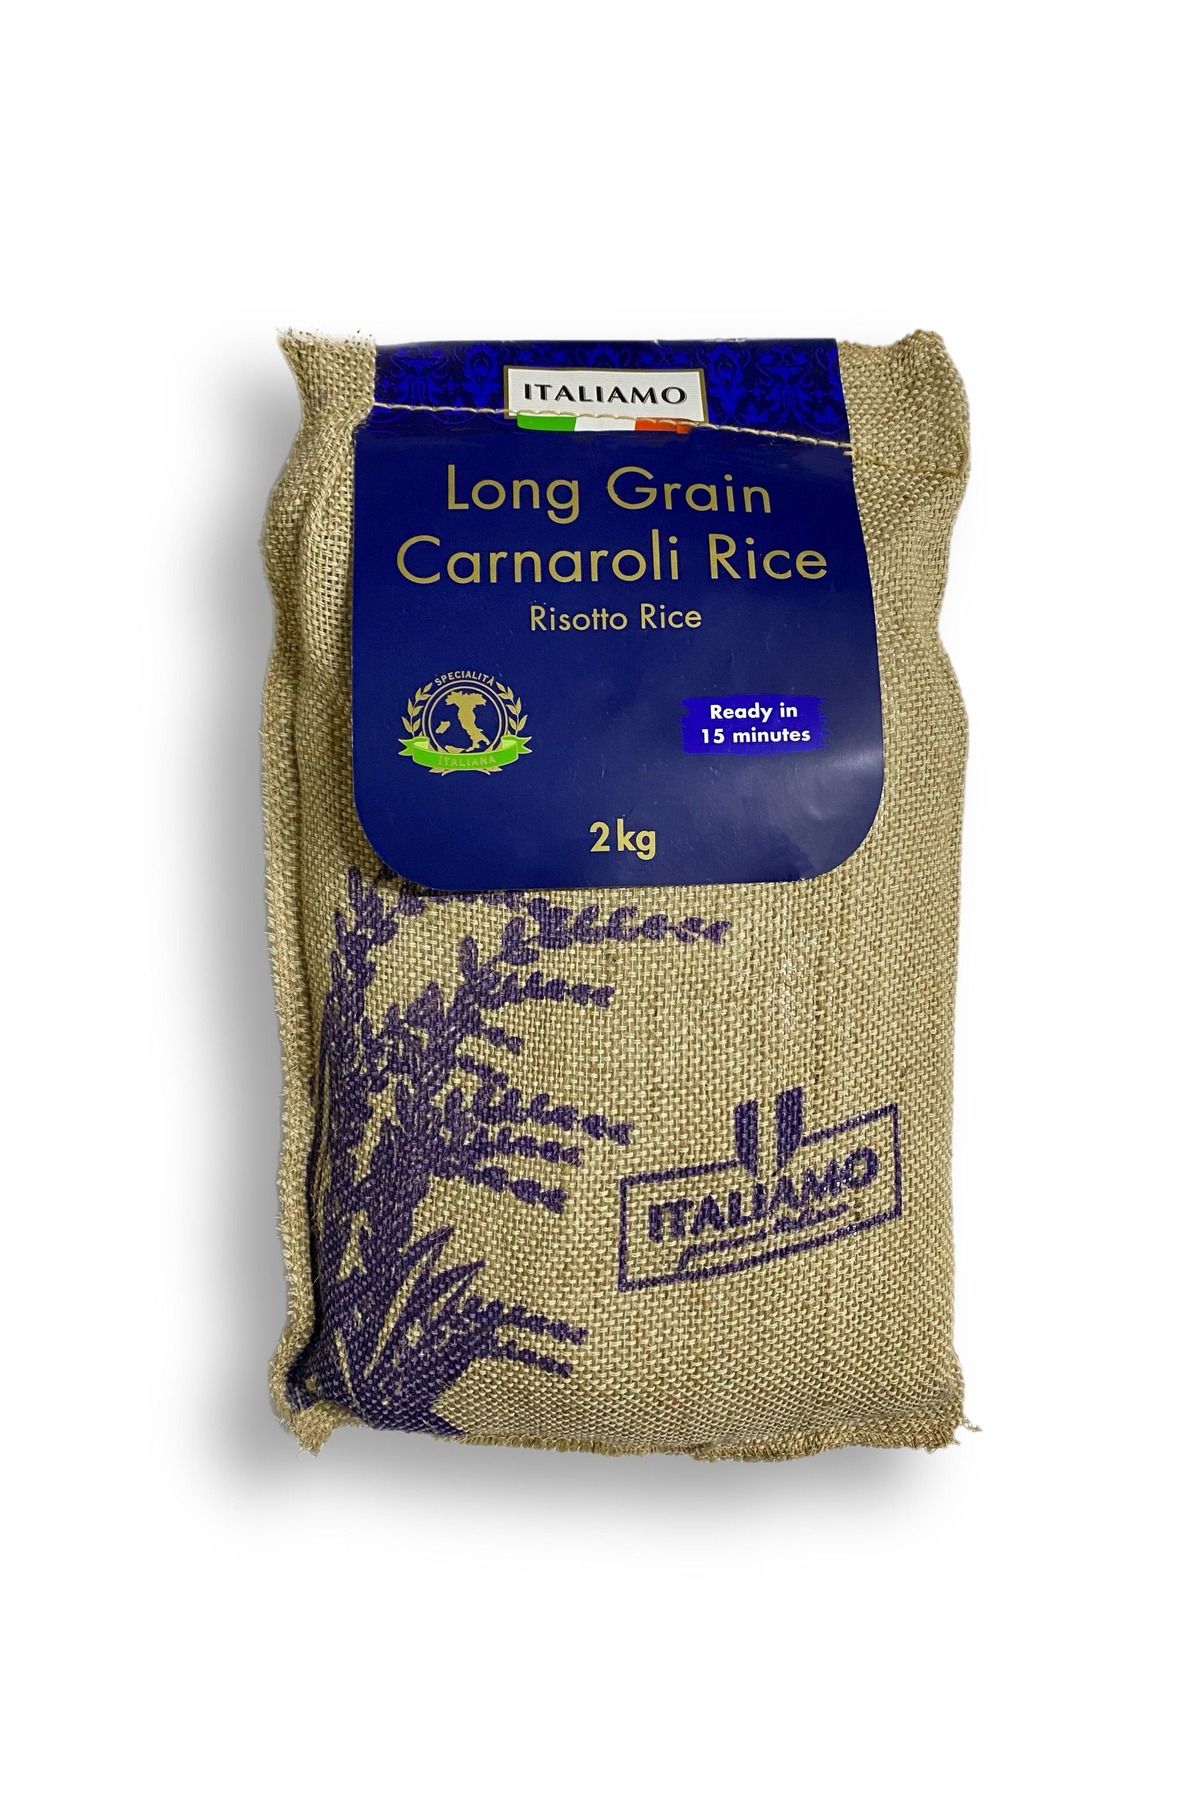 İtaliamo Italiamo Long Grain Carnaroli Risotto Rice 2kg